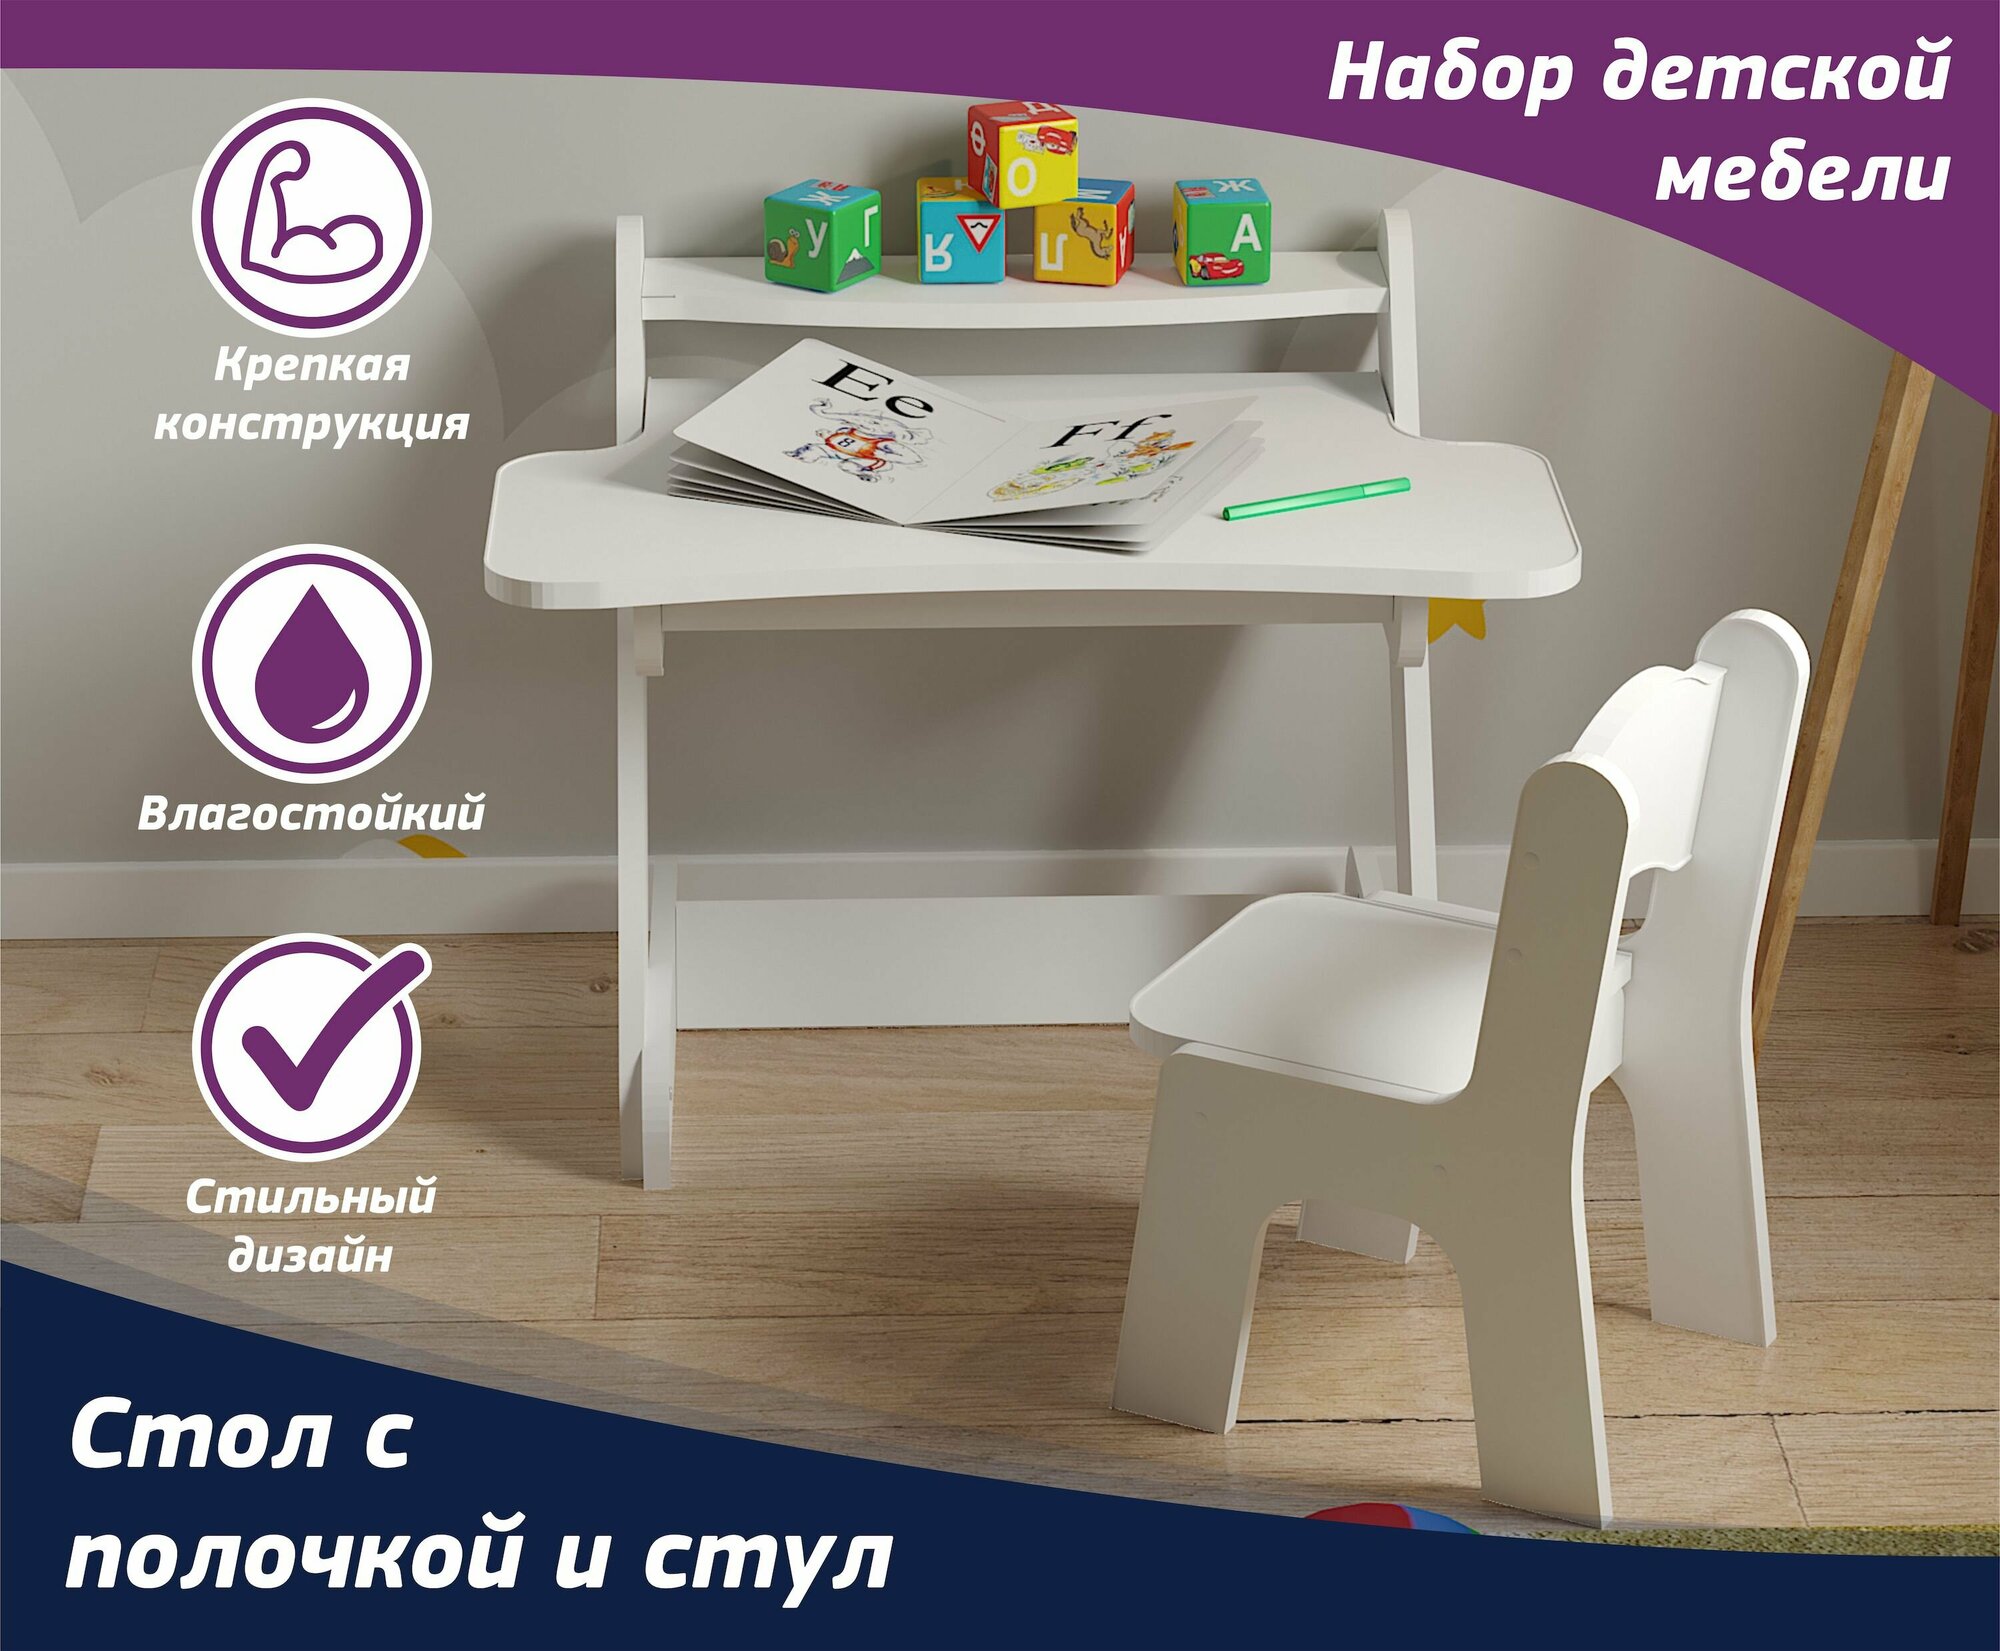 Набор детской мебели стол с полочкой и стул. Комплект белый, для мальчиков и девочек. Комплект для детской комнаты.